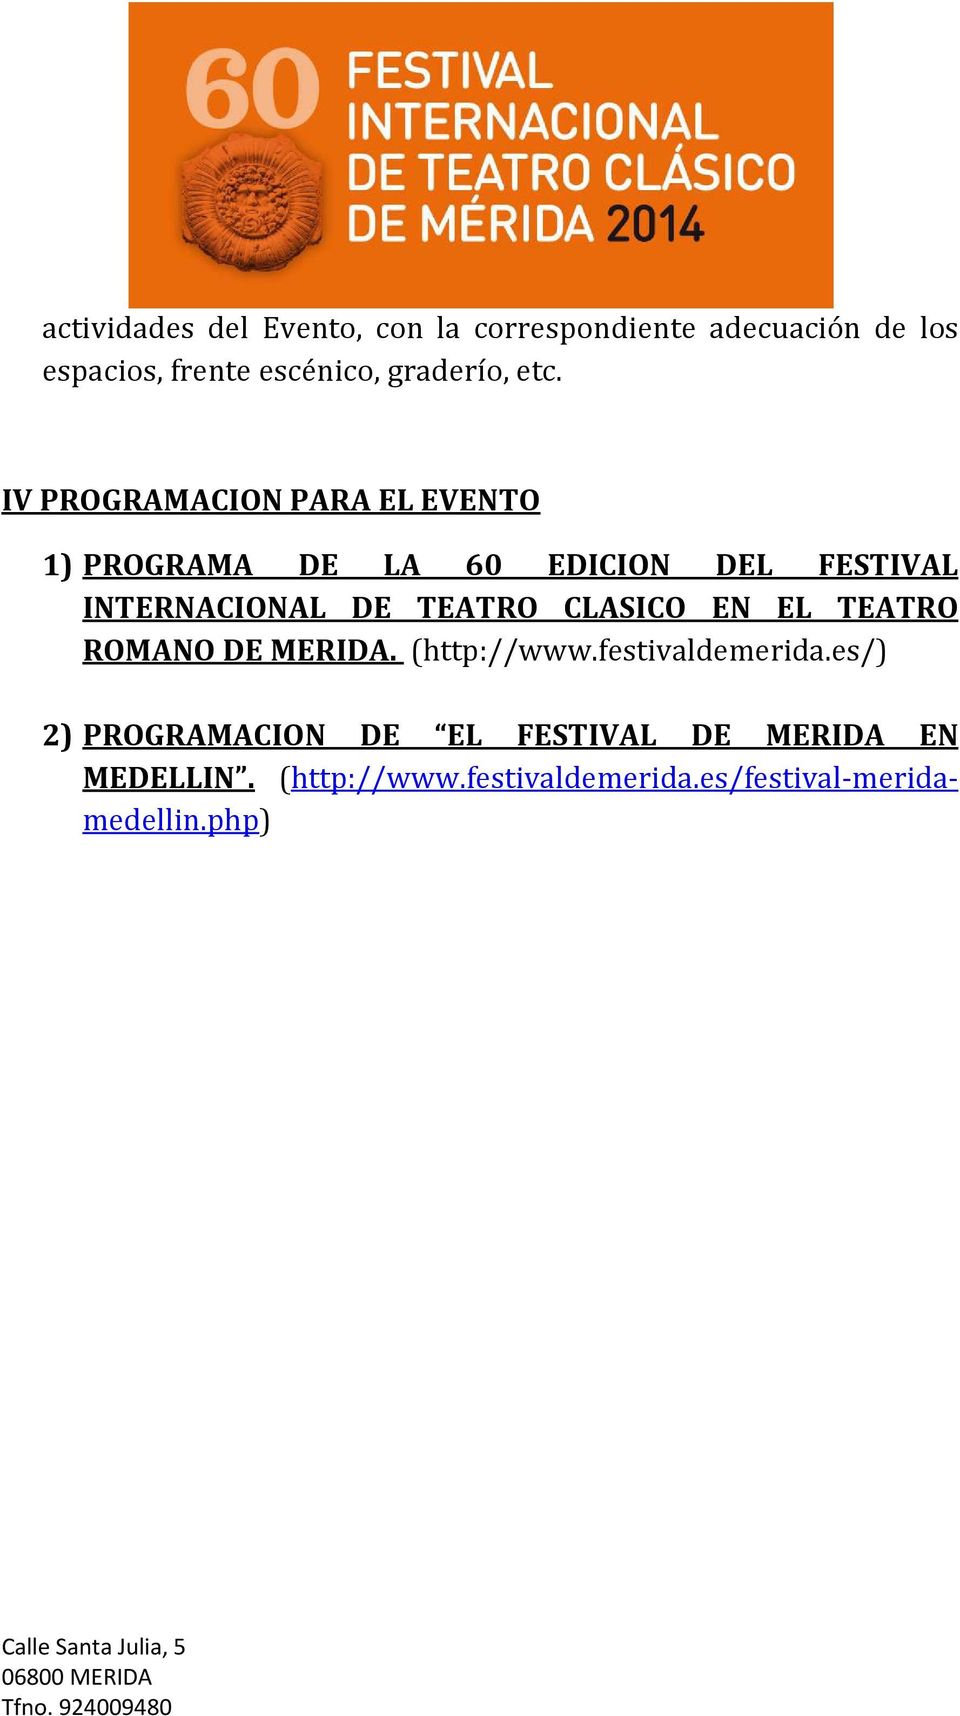 IV PROGRAMACION PARA EL EVENTO 1) PROGRAMA DE LA 60 EDICION DEL FESTIVAL INTERNACIONAL DE TEATRO